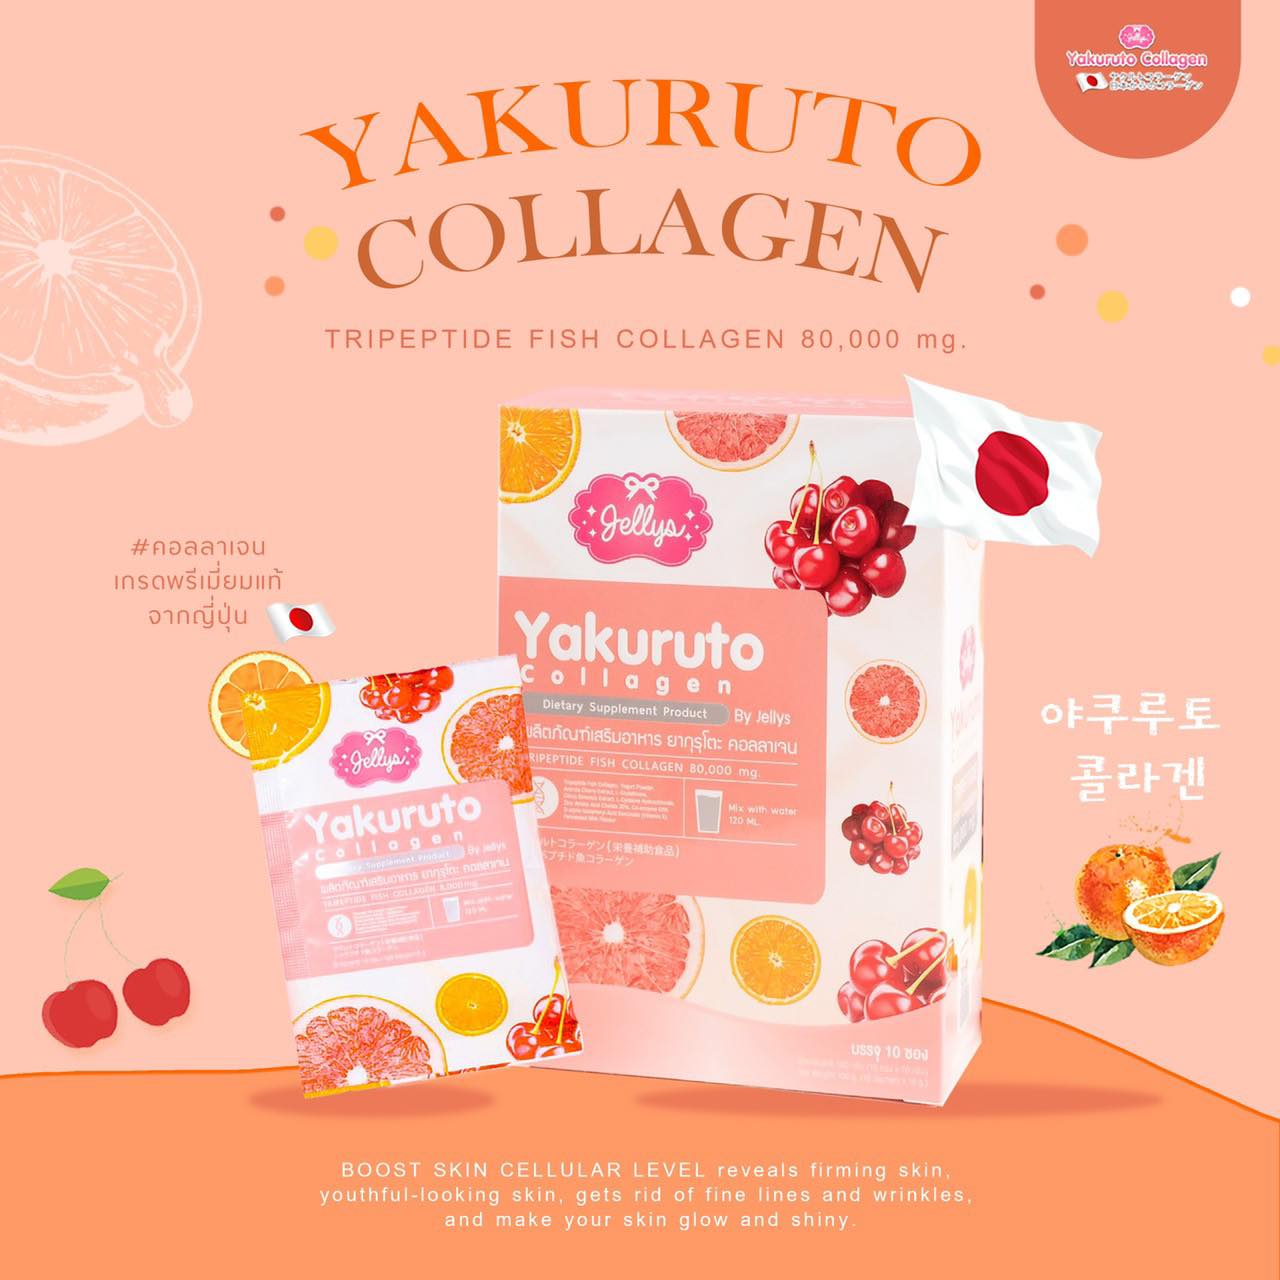 Yakuruto Collagen